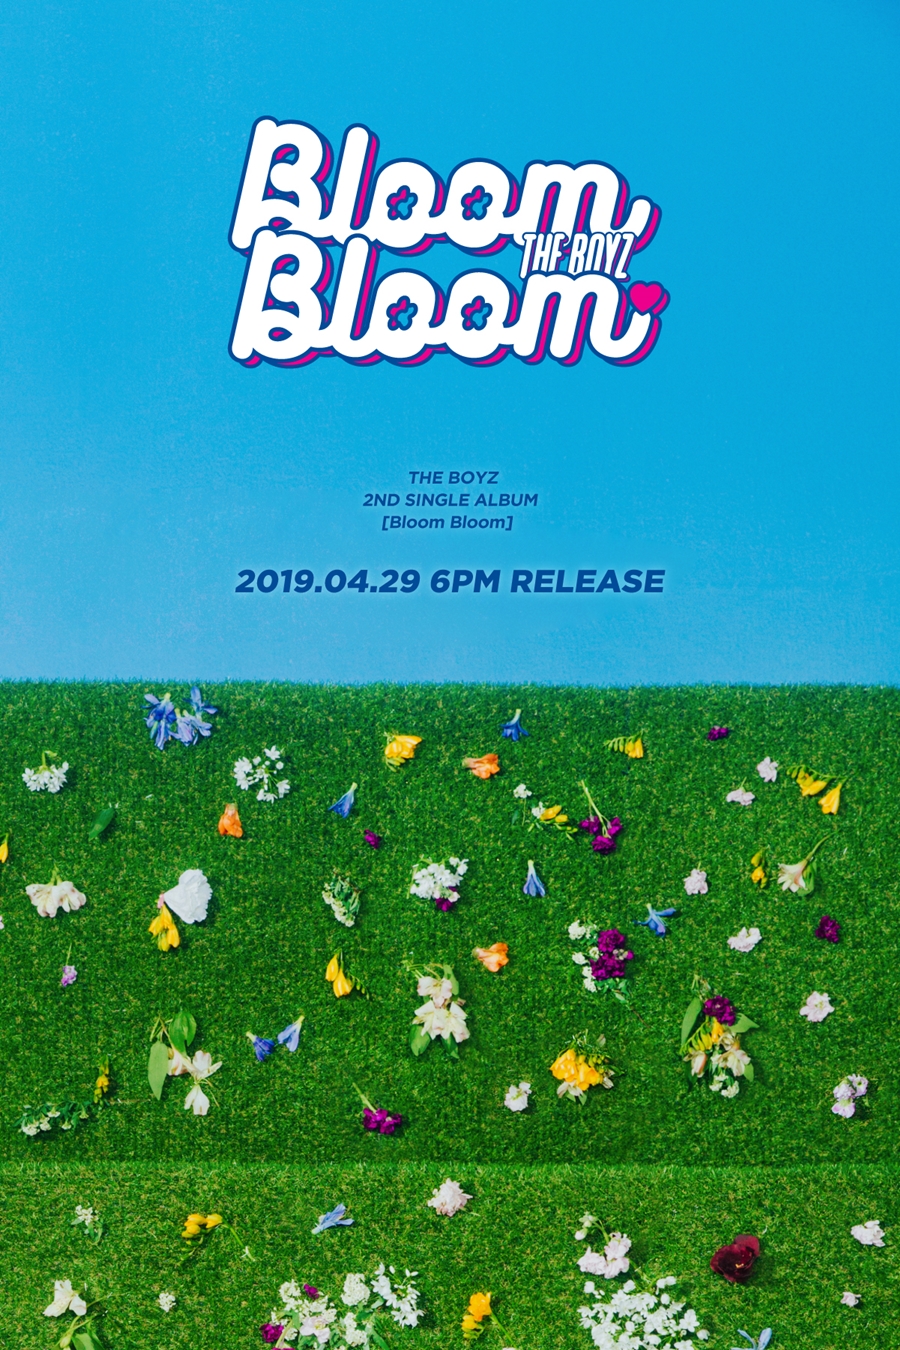 더보이즈, 29일 새 싱글 'Bloom Bloom' 발표…개화기 소년 감성